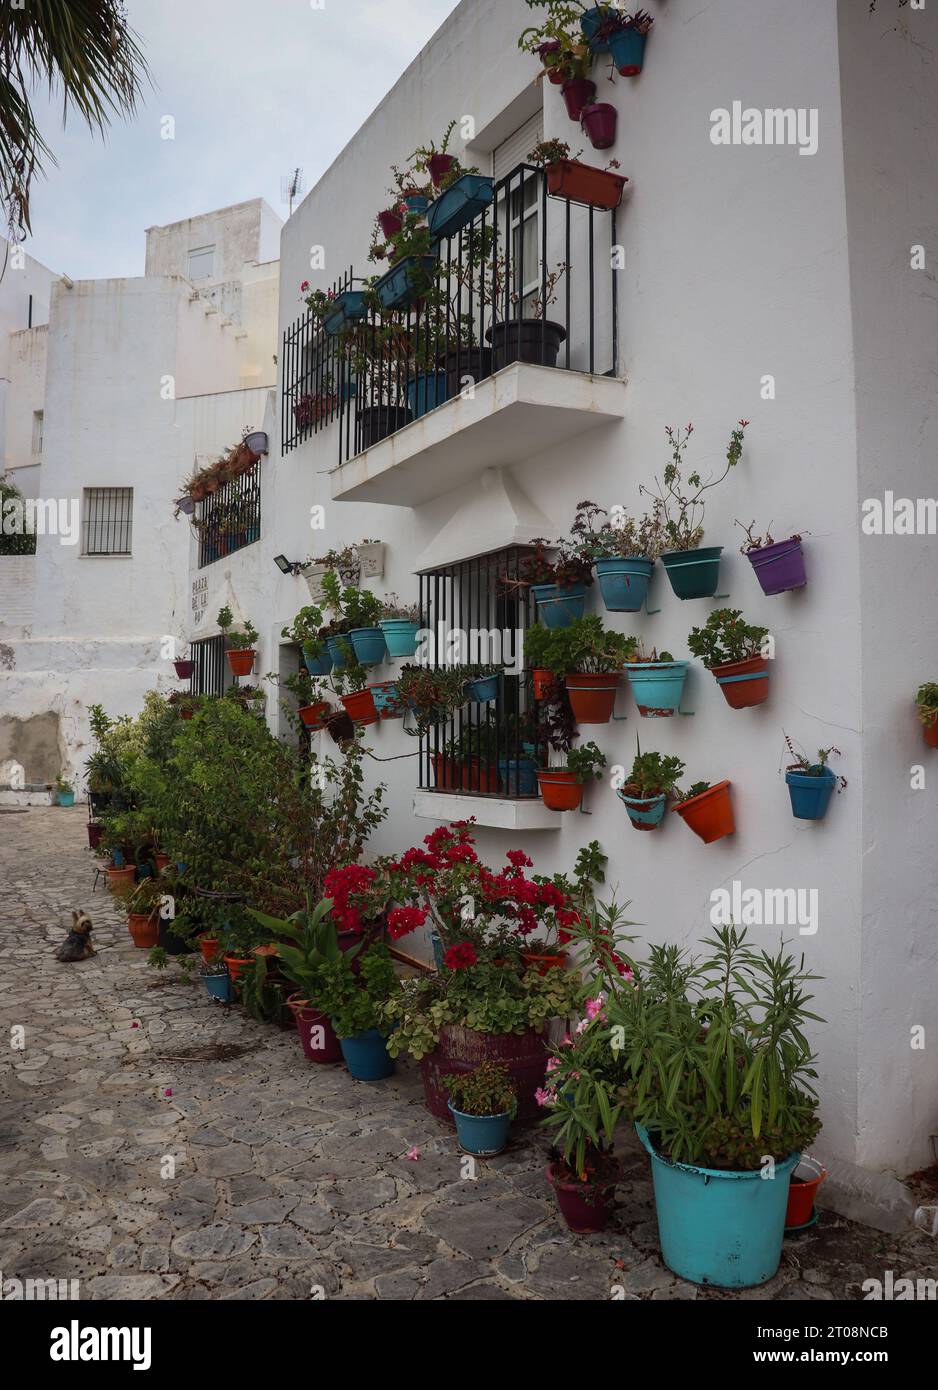 Eine wunderschöne Gasse in einer romantischen Stadt in Spanien Stockfoto